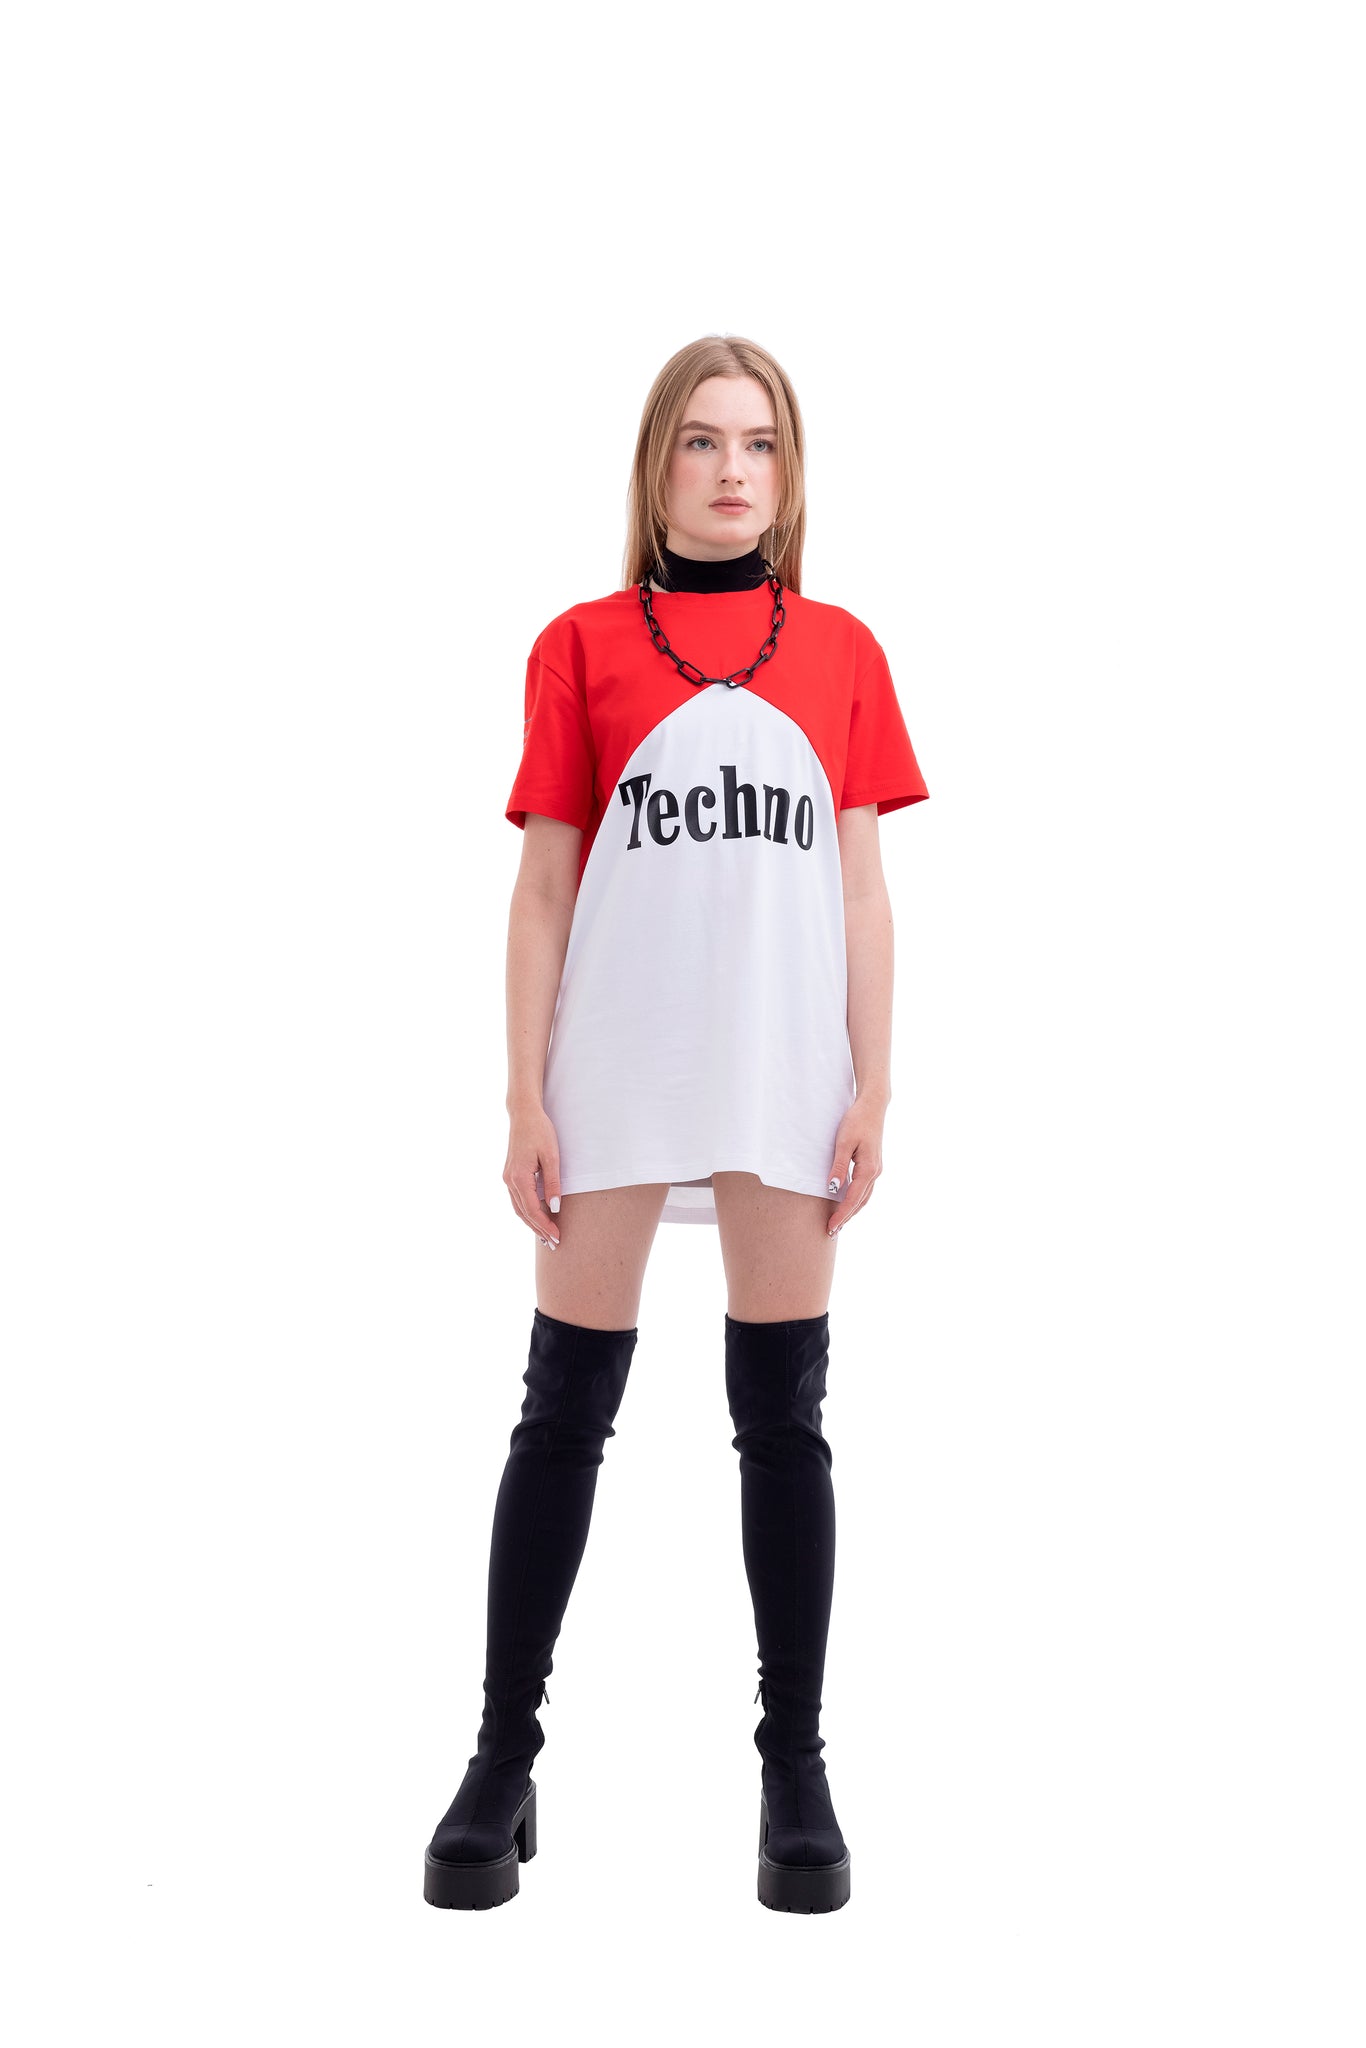 Techno Heals Übergroßes Unisex-Baumwoll-T-Shirt